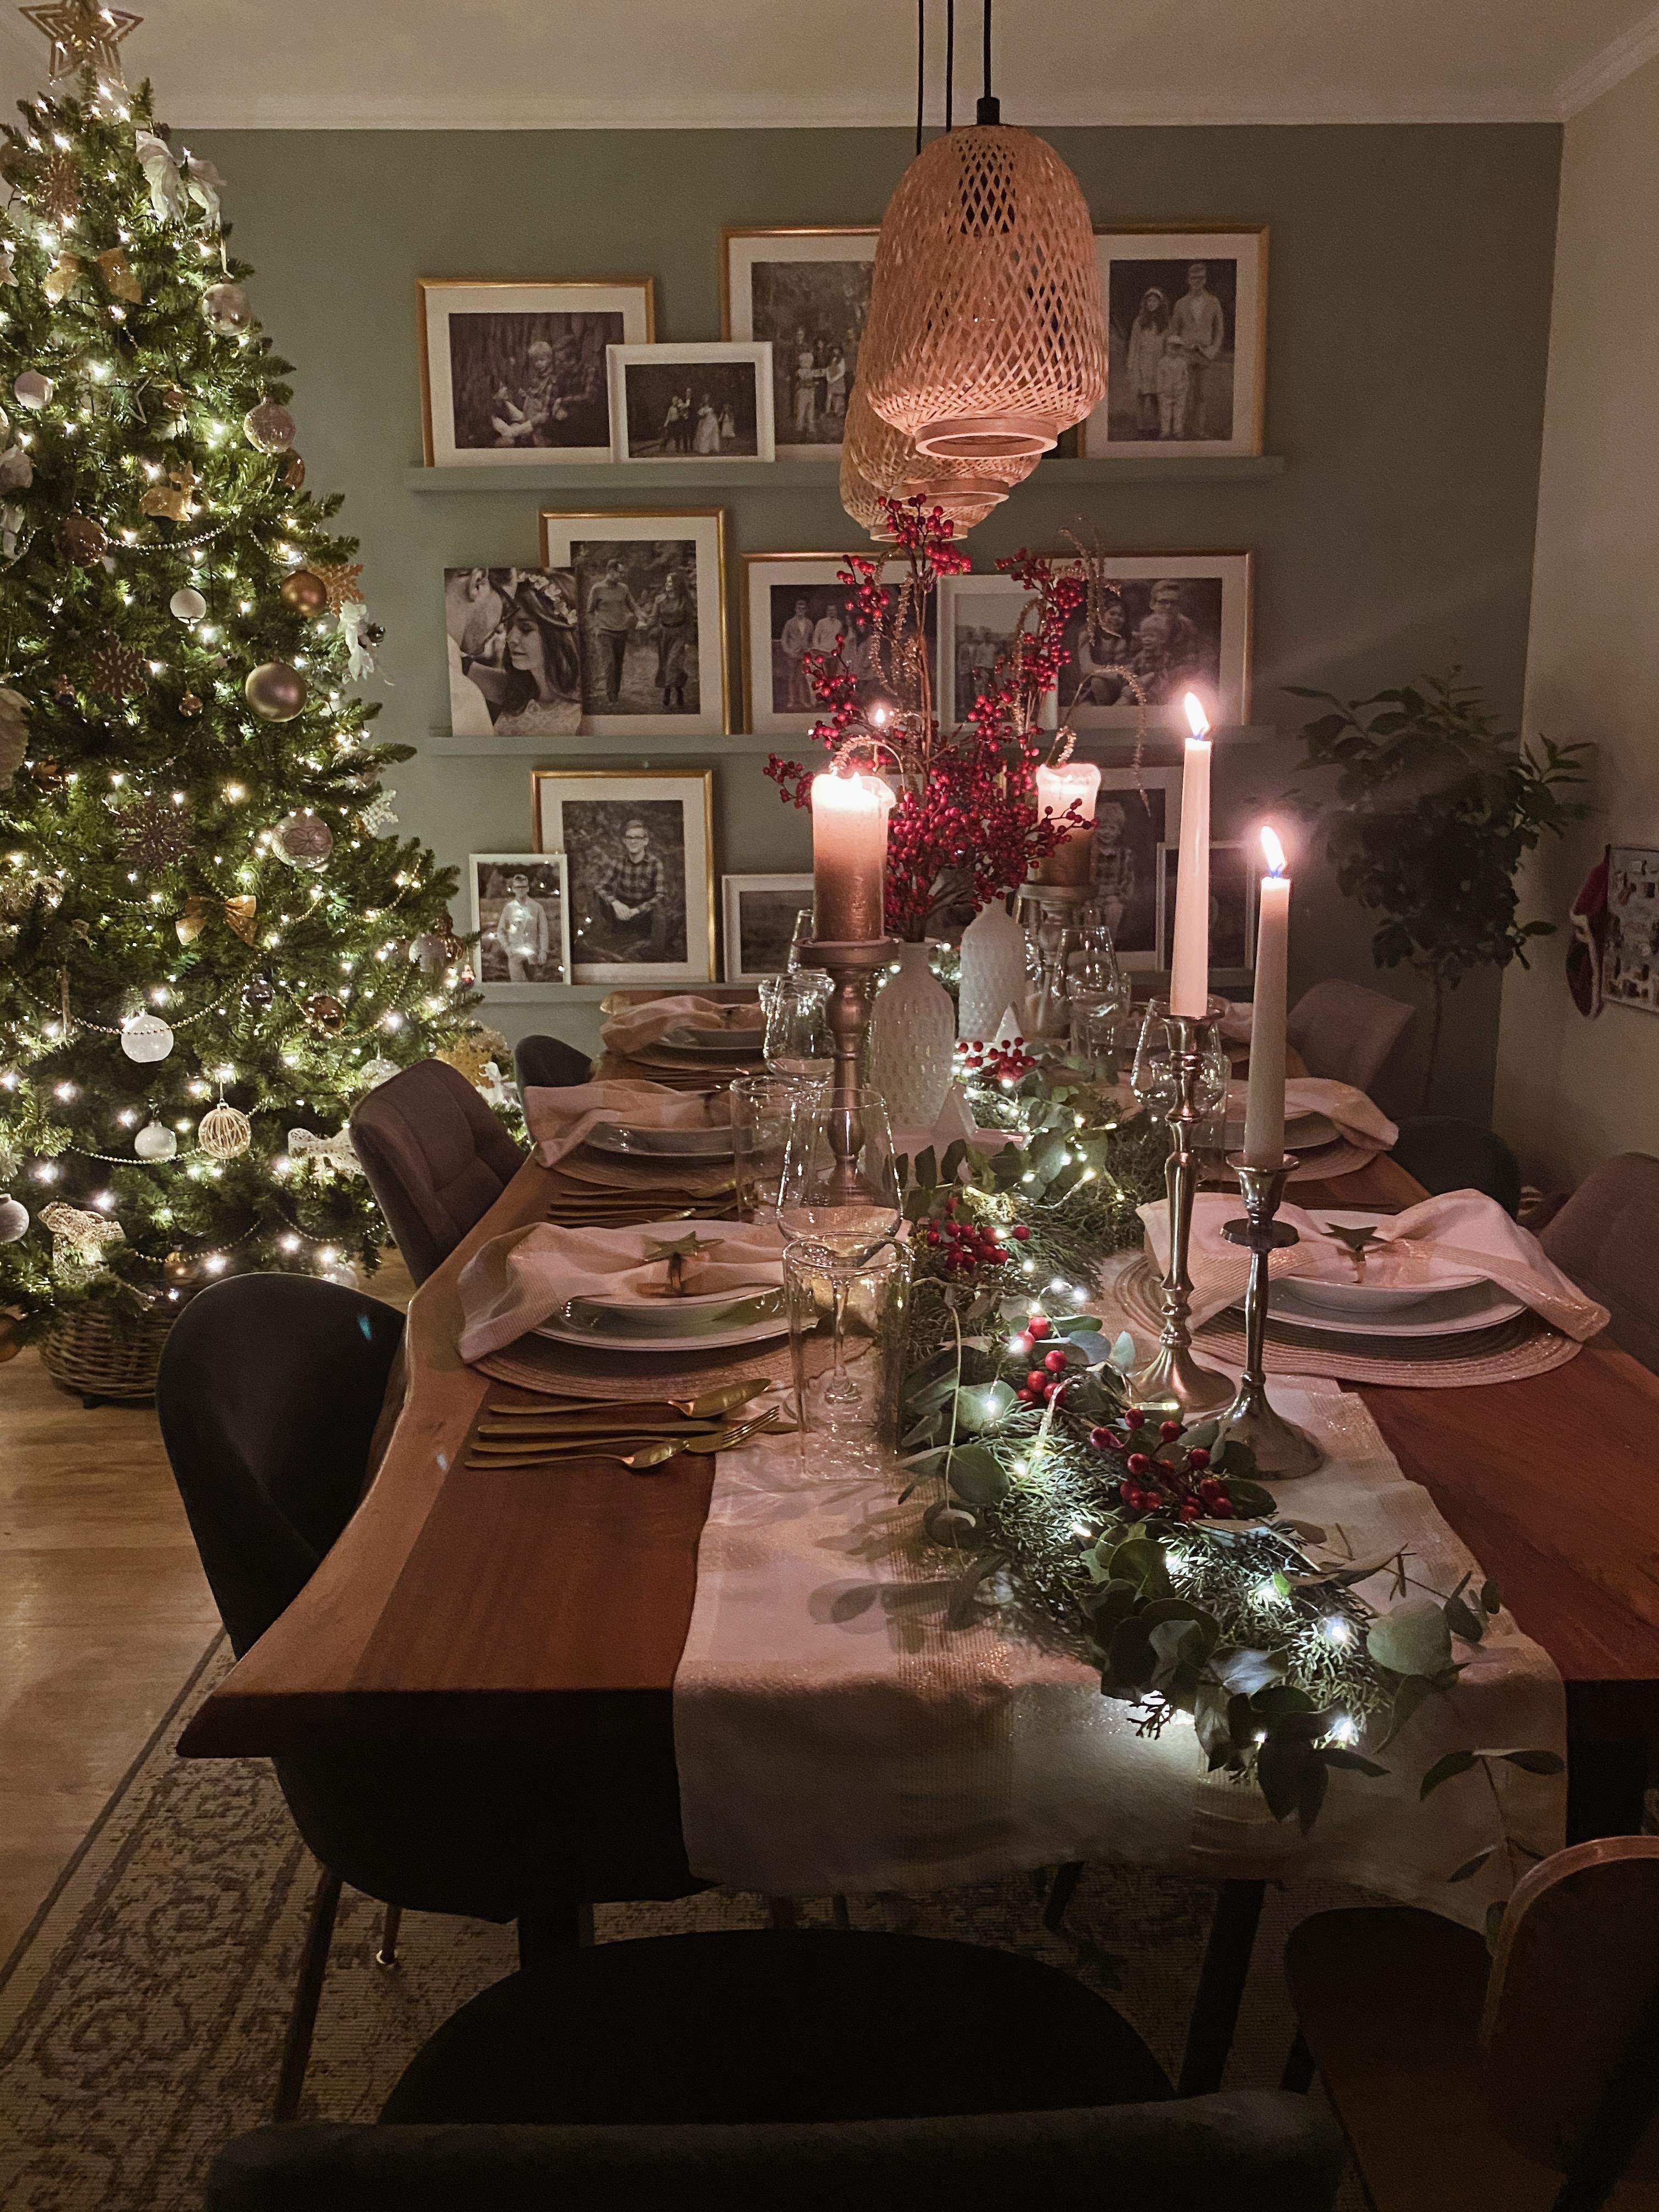 Noch ein bissl Weihnachtsfeeling...es ist ja noch Weihnachten.✨🎄😉 
#tablesetting#christmastable #weihnachtenzuhause